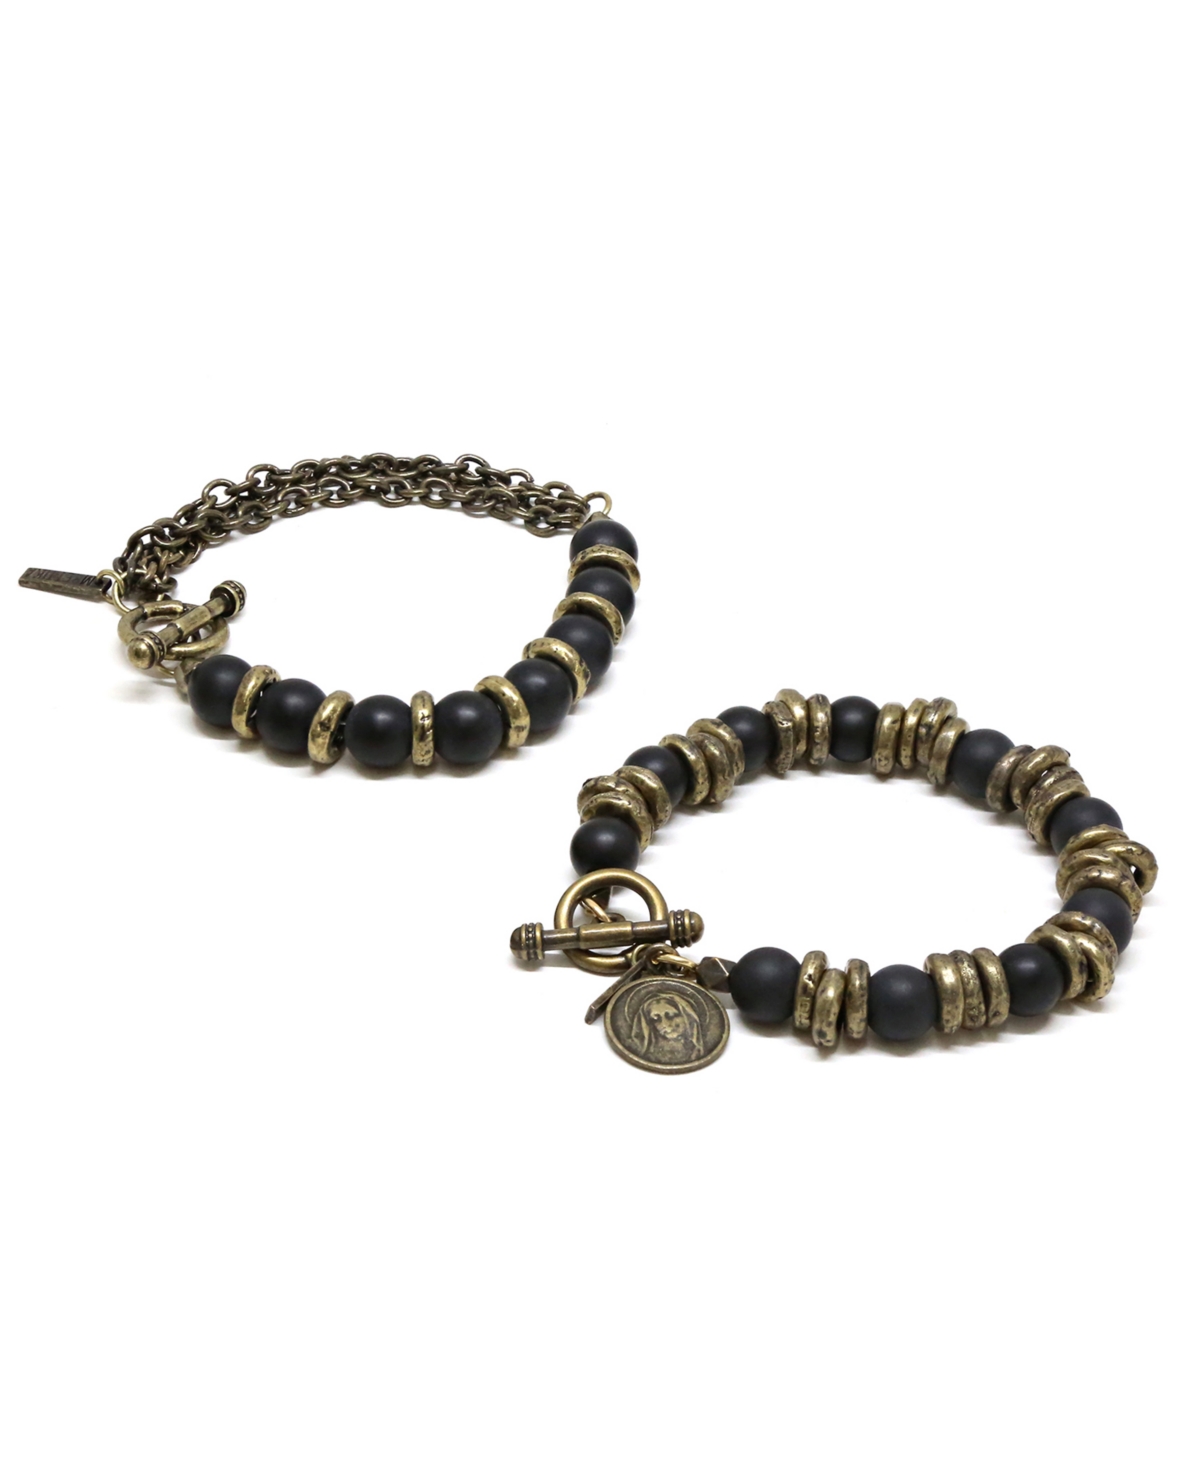 Mr.Ettika Brass Ring and Beaded Bracelet, Pack of 2 - Multi